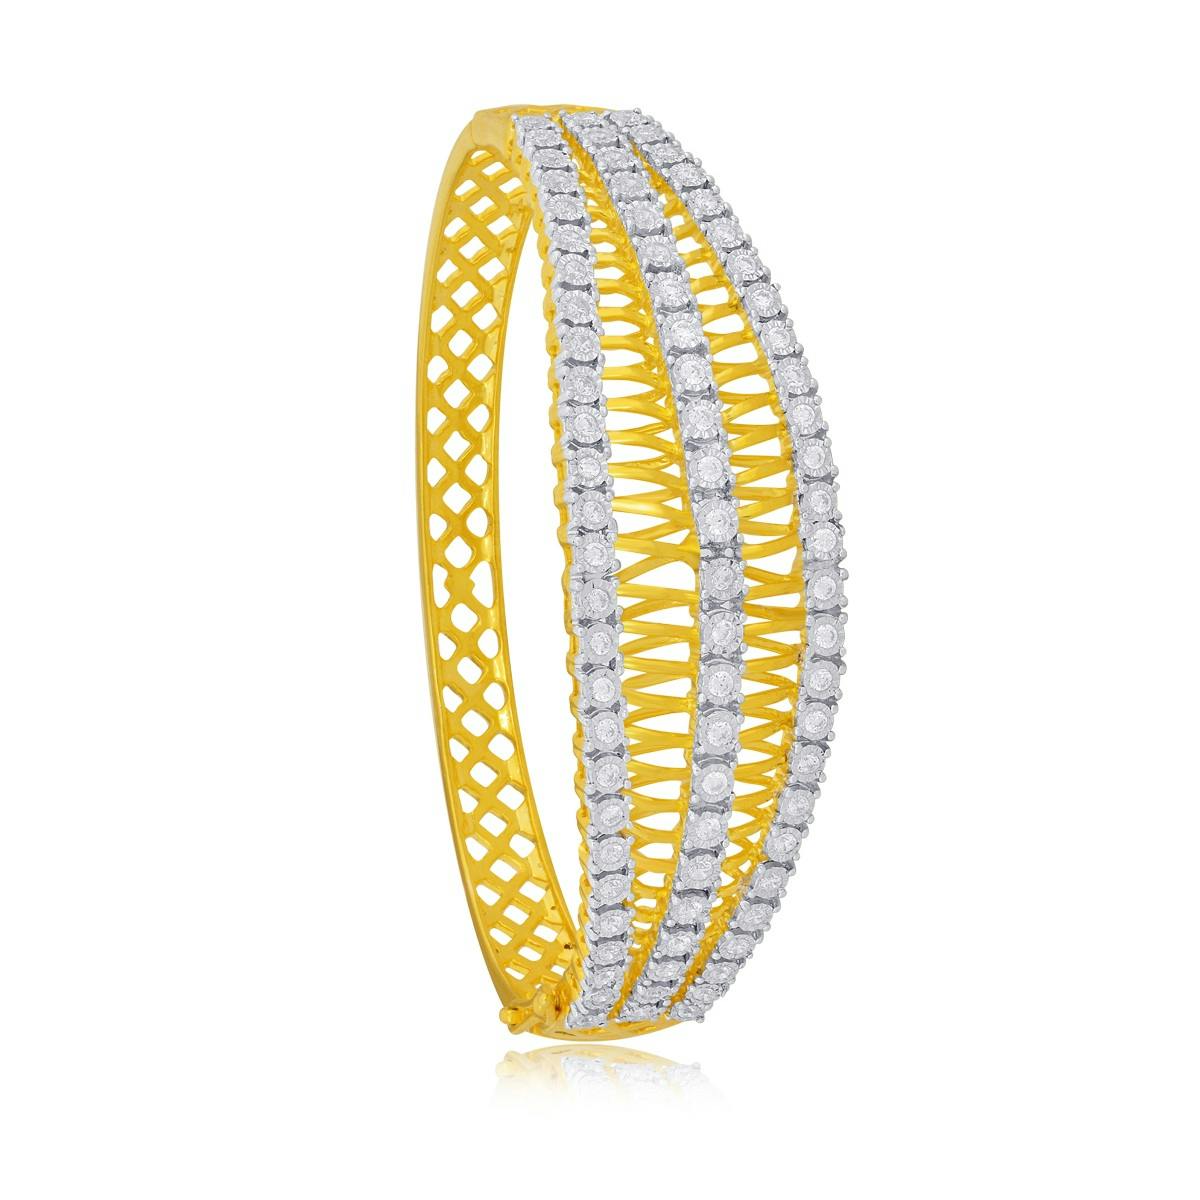 Shimmering Solitaire diamond bracelet